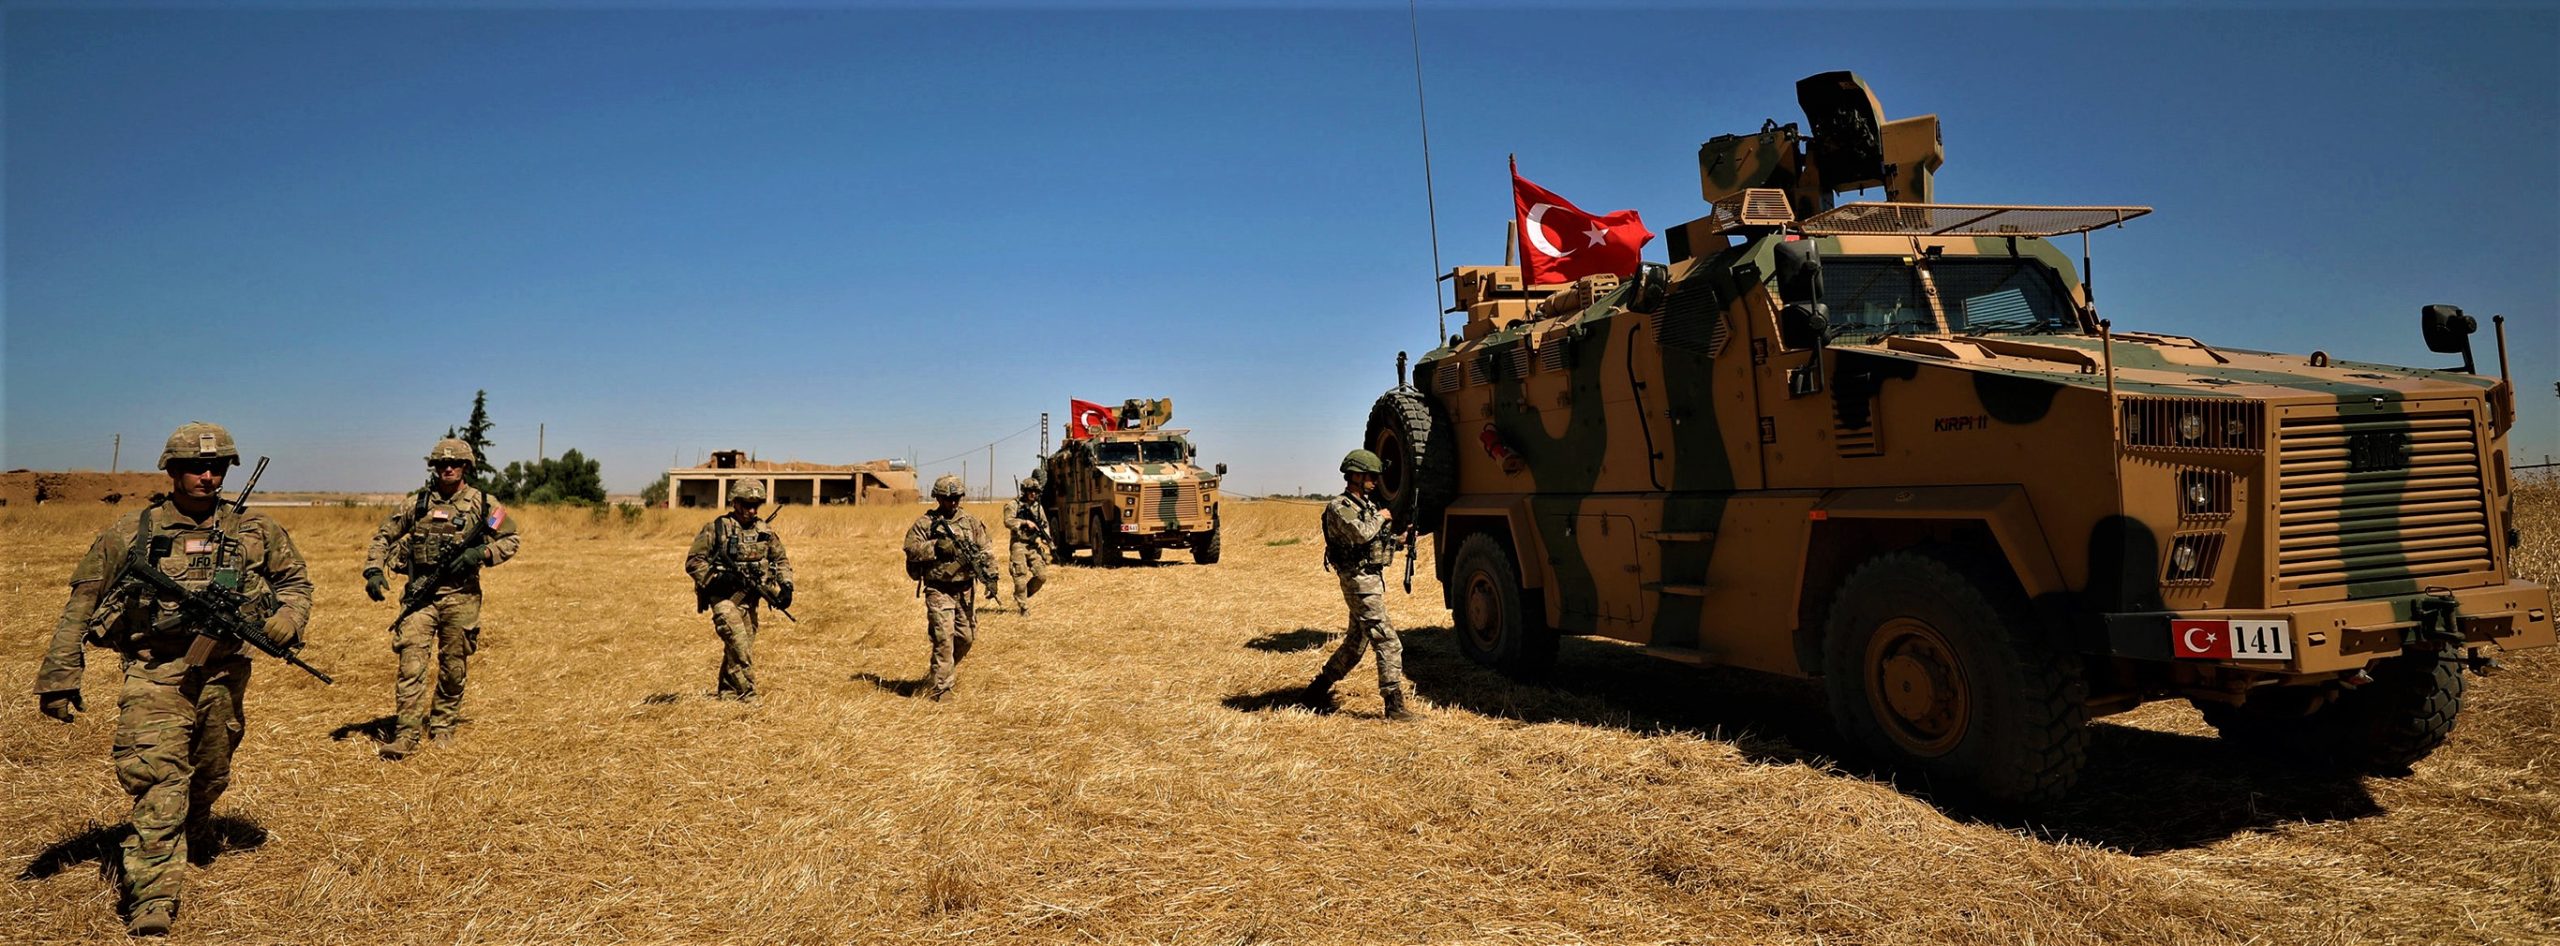 Στα 50 χλμ. μέσα στην Συρία οι τουρκικές περίπολοι! – Χωρίς αντίσταση ο δρόμος προς την Ράκκα